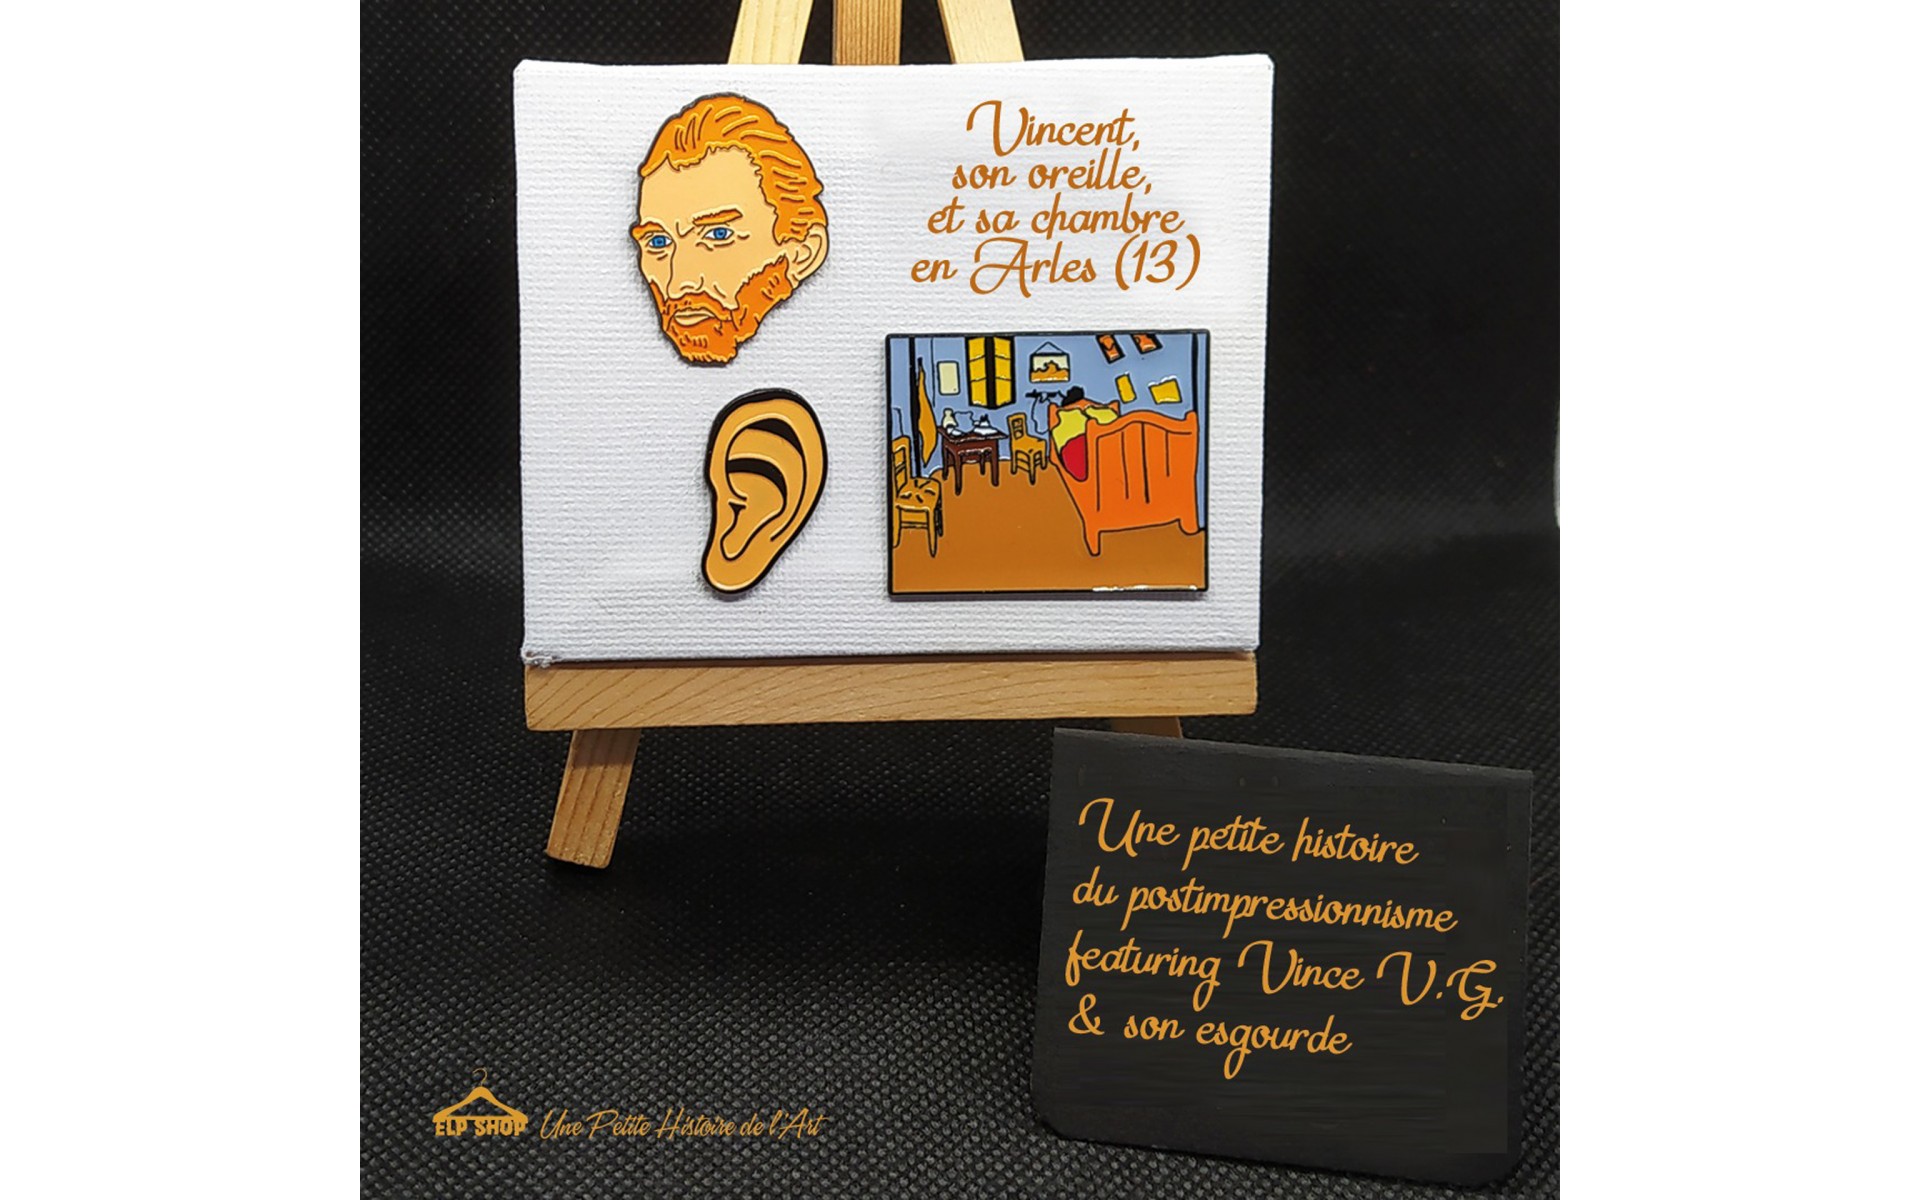 Vincent, son oreille et sa chambre en Arles